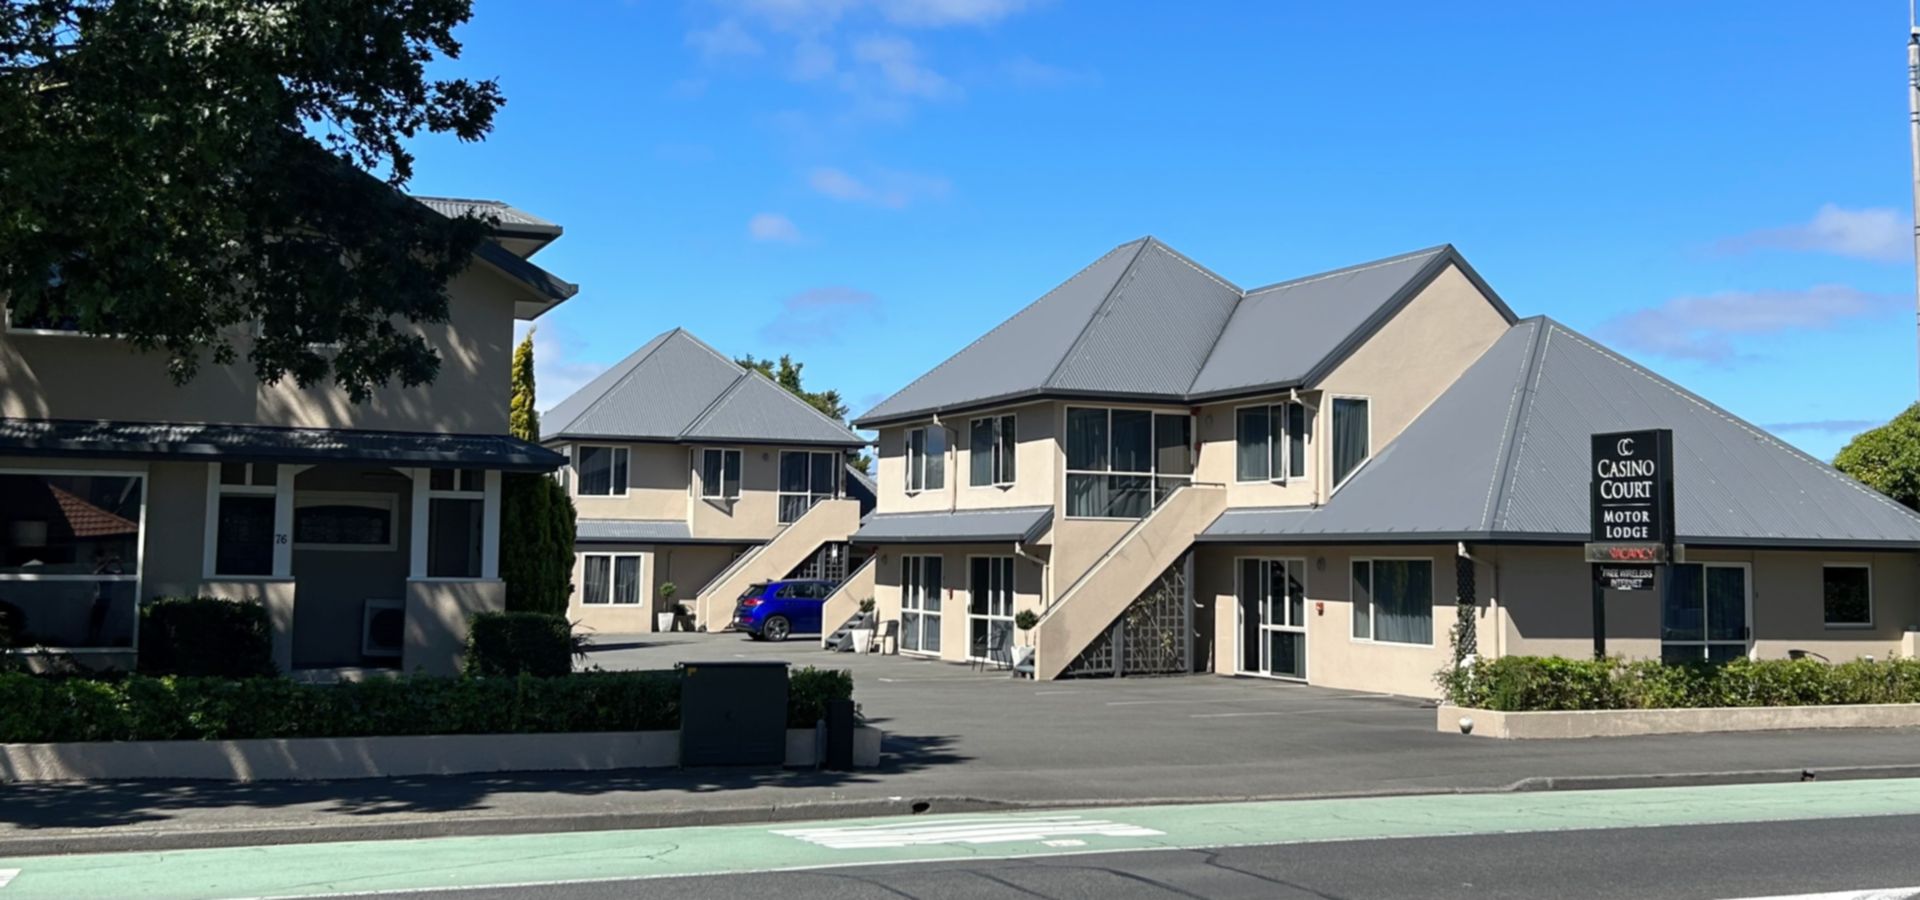 Christchurch accommodation